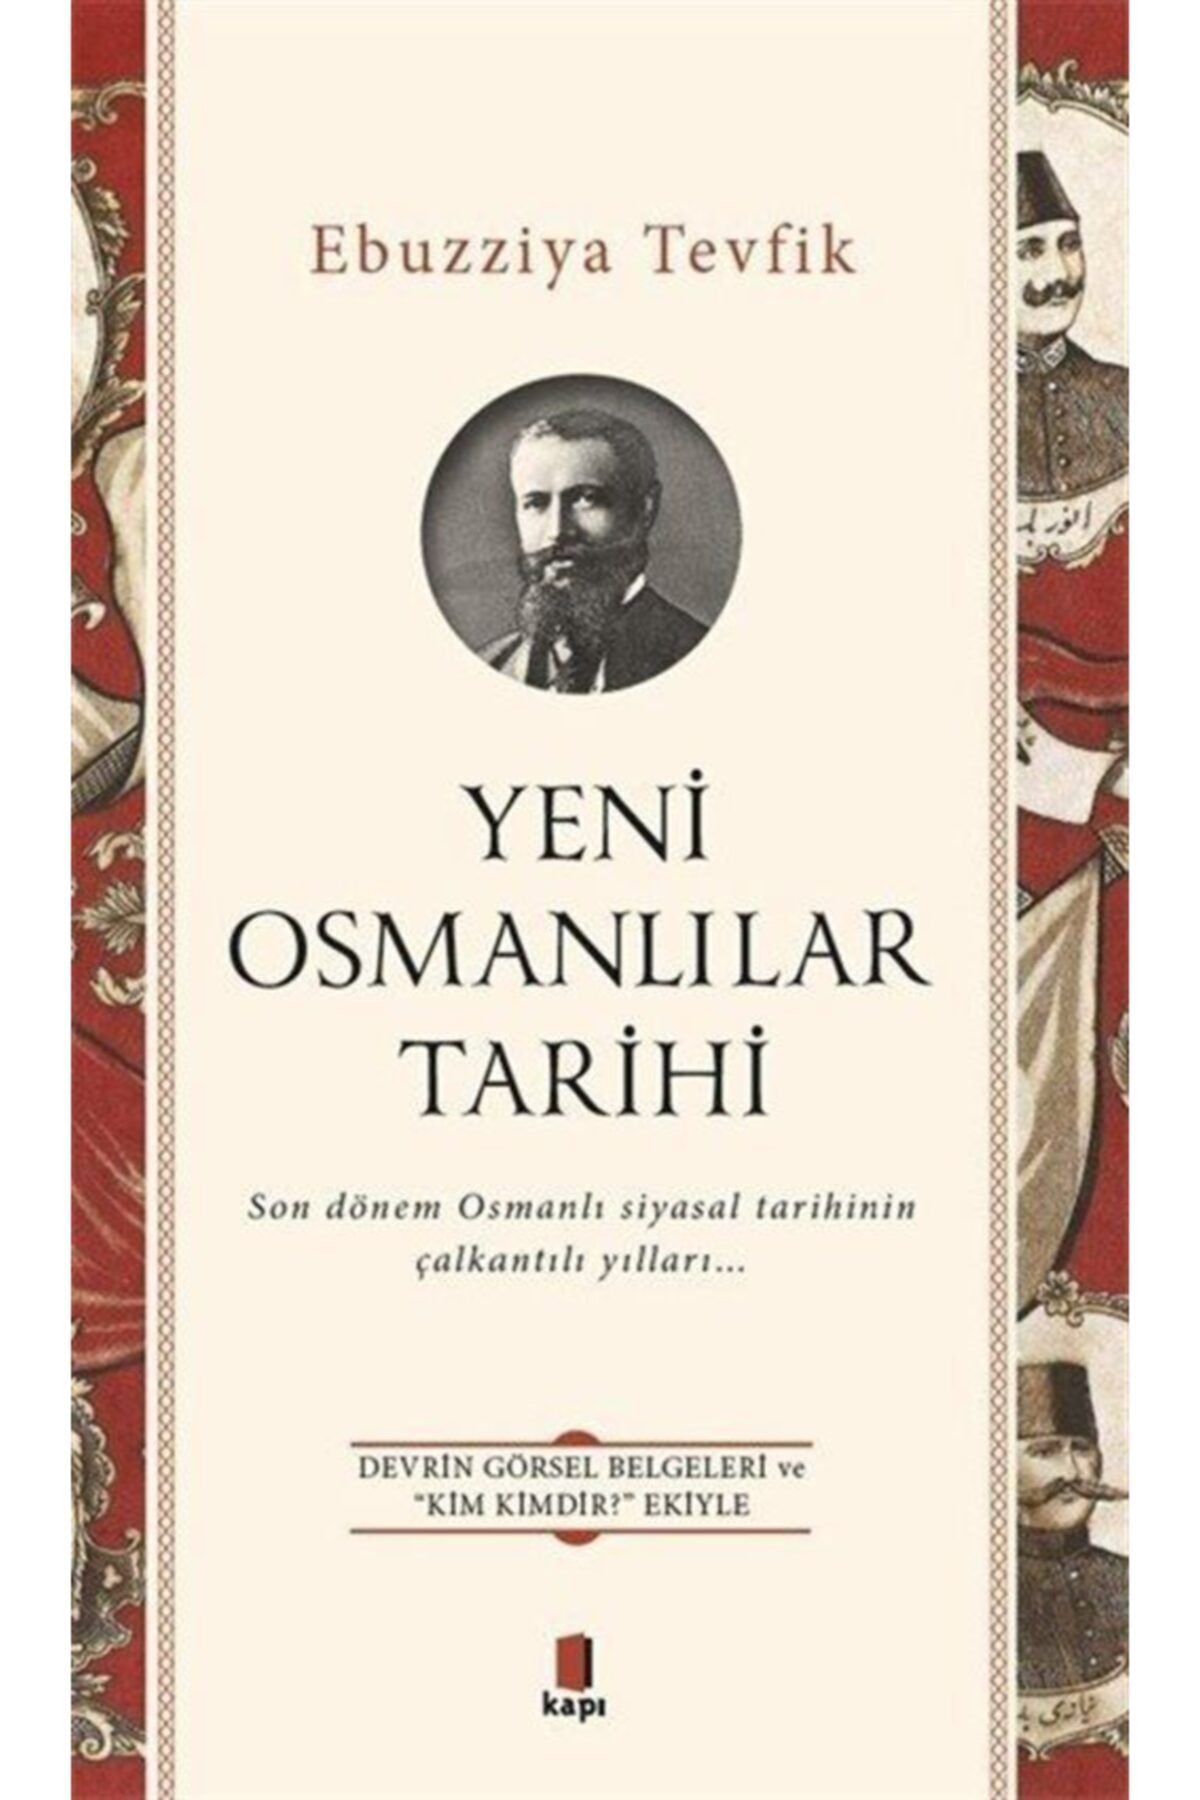 Kapı Yayınları Yeni Osmanlılar Tarihi Ebuzziyya Tevfik